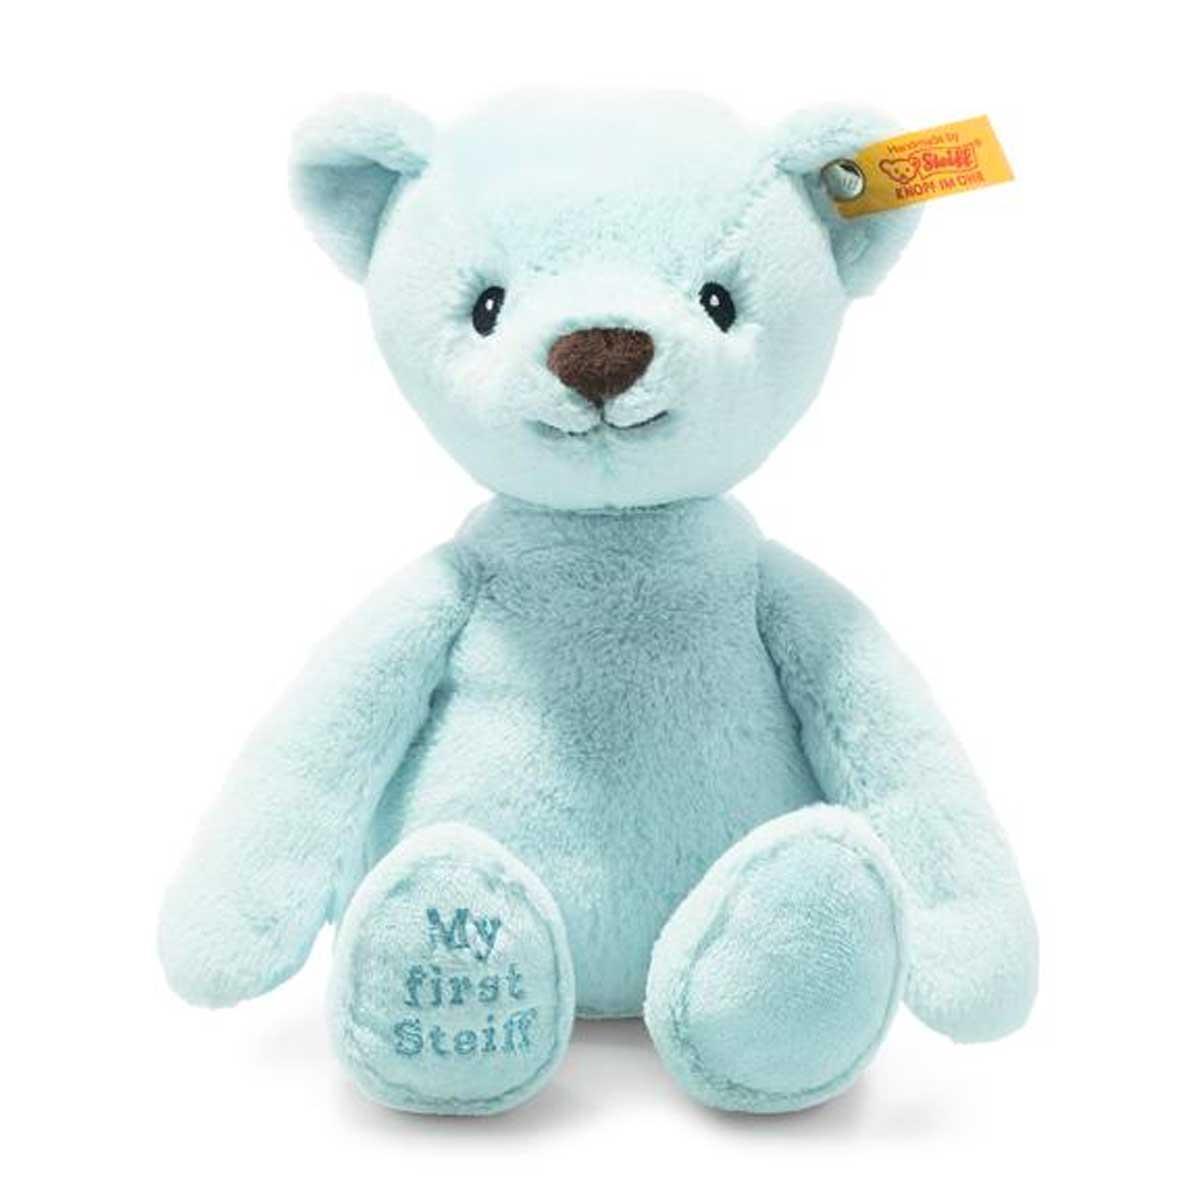 Steiff Soft & Cuddly Friends My First Steiff Blue Teddy Bear - 26 cm 